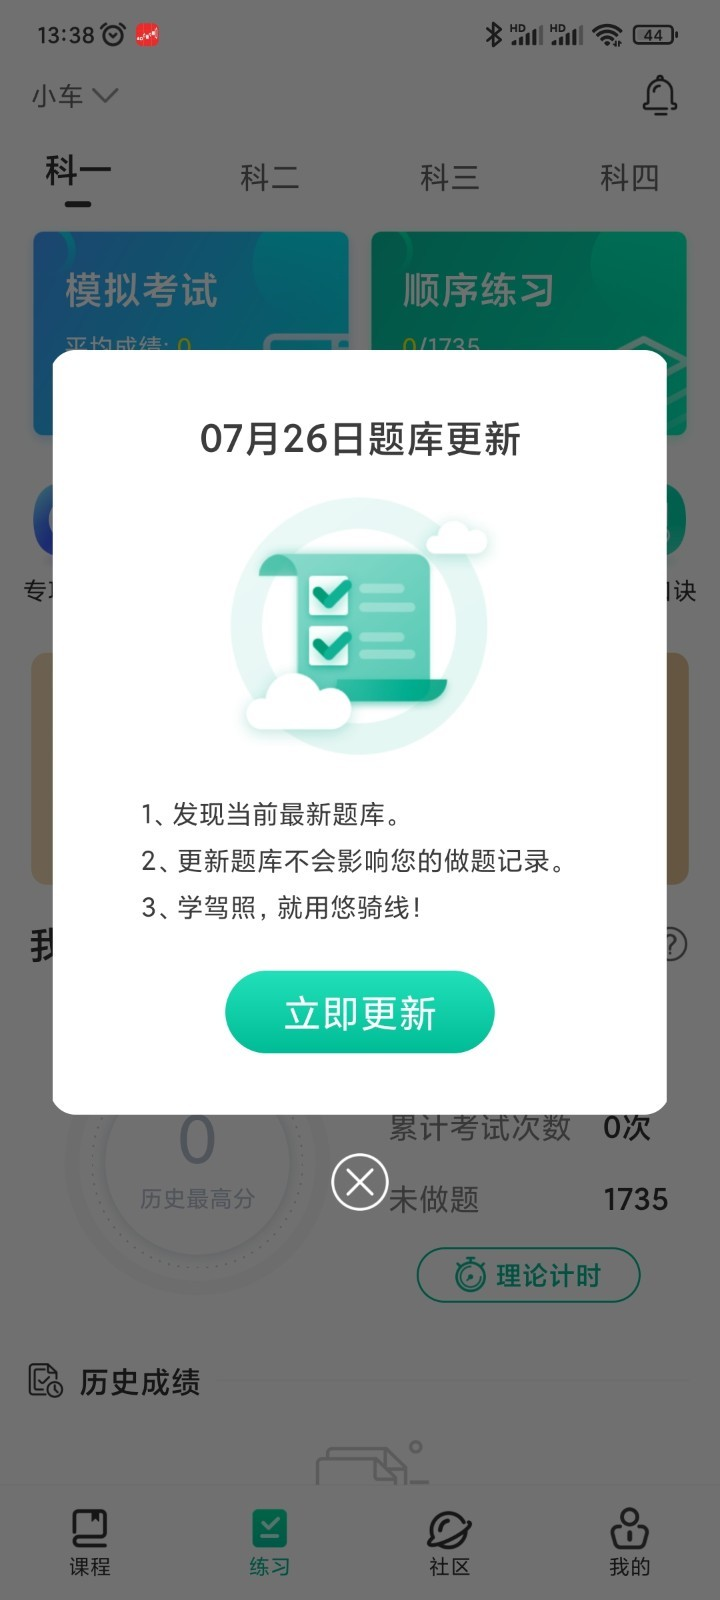 悠骑线appv5.1.9